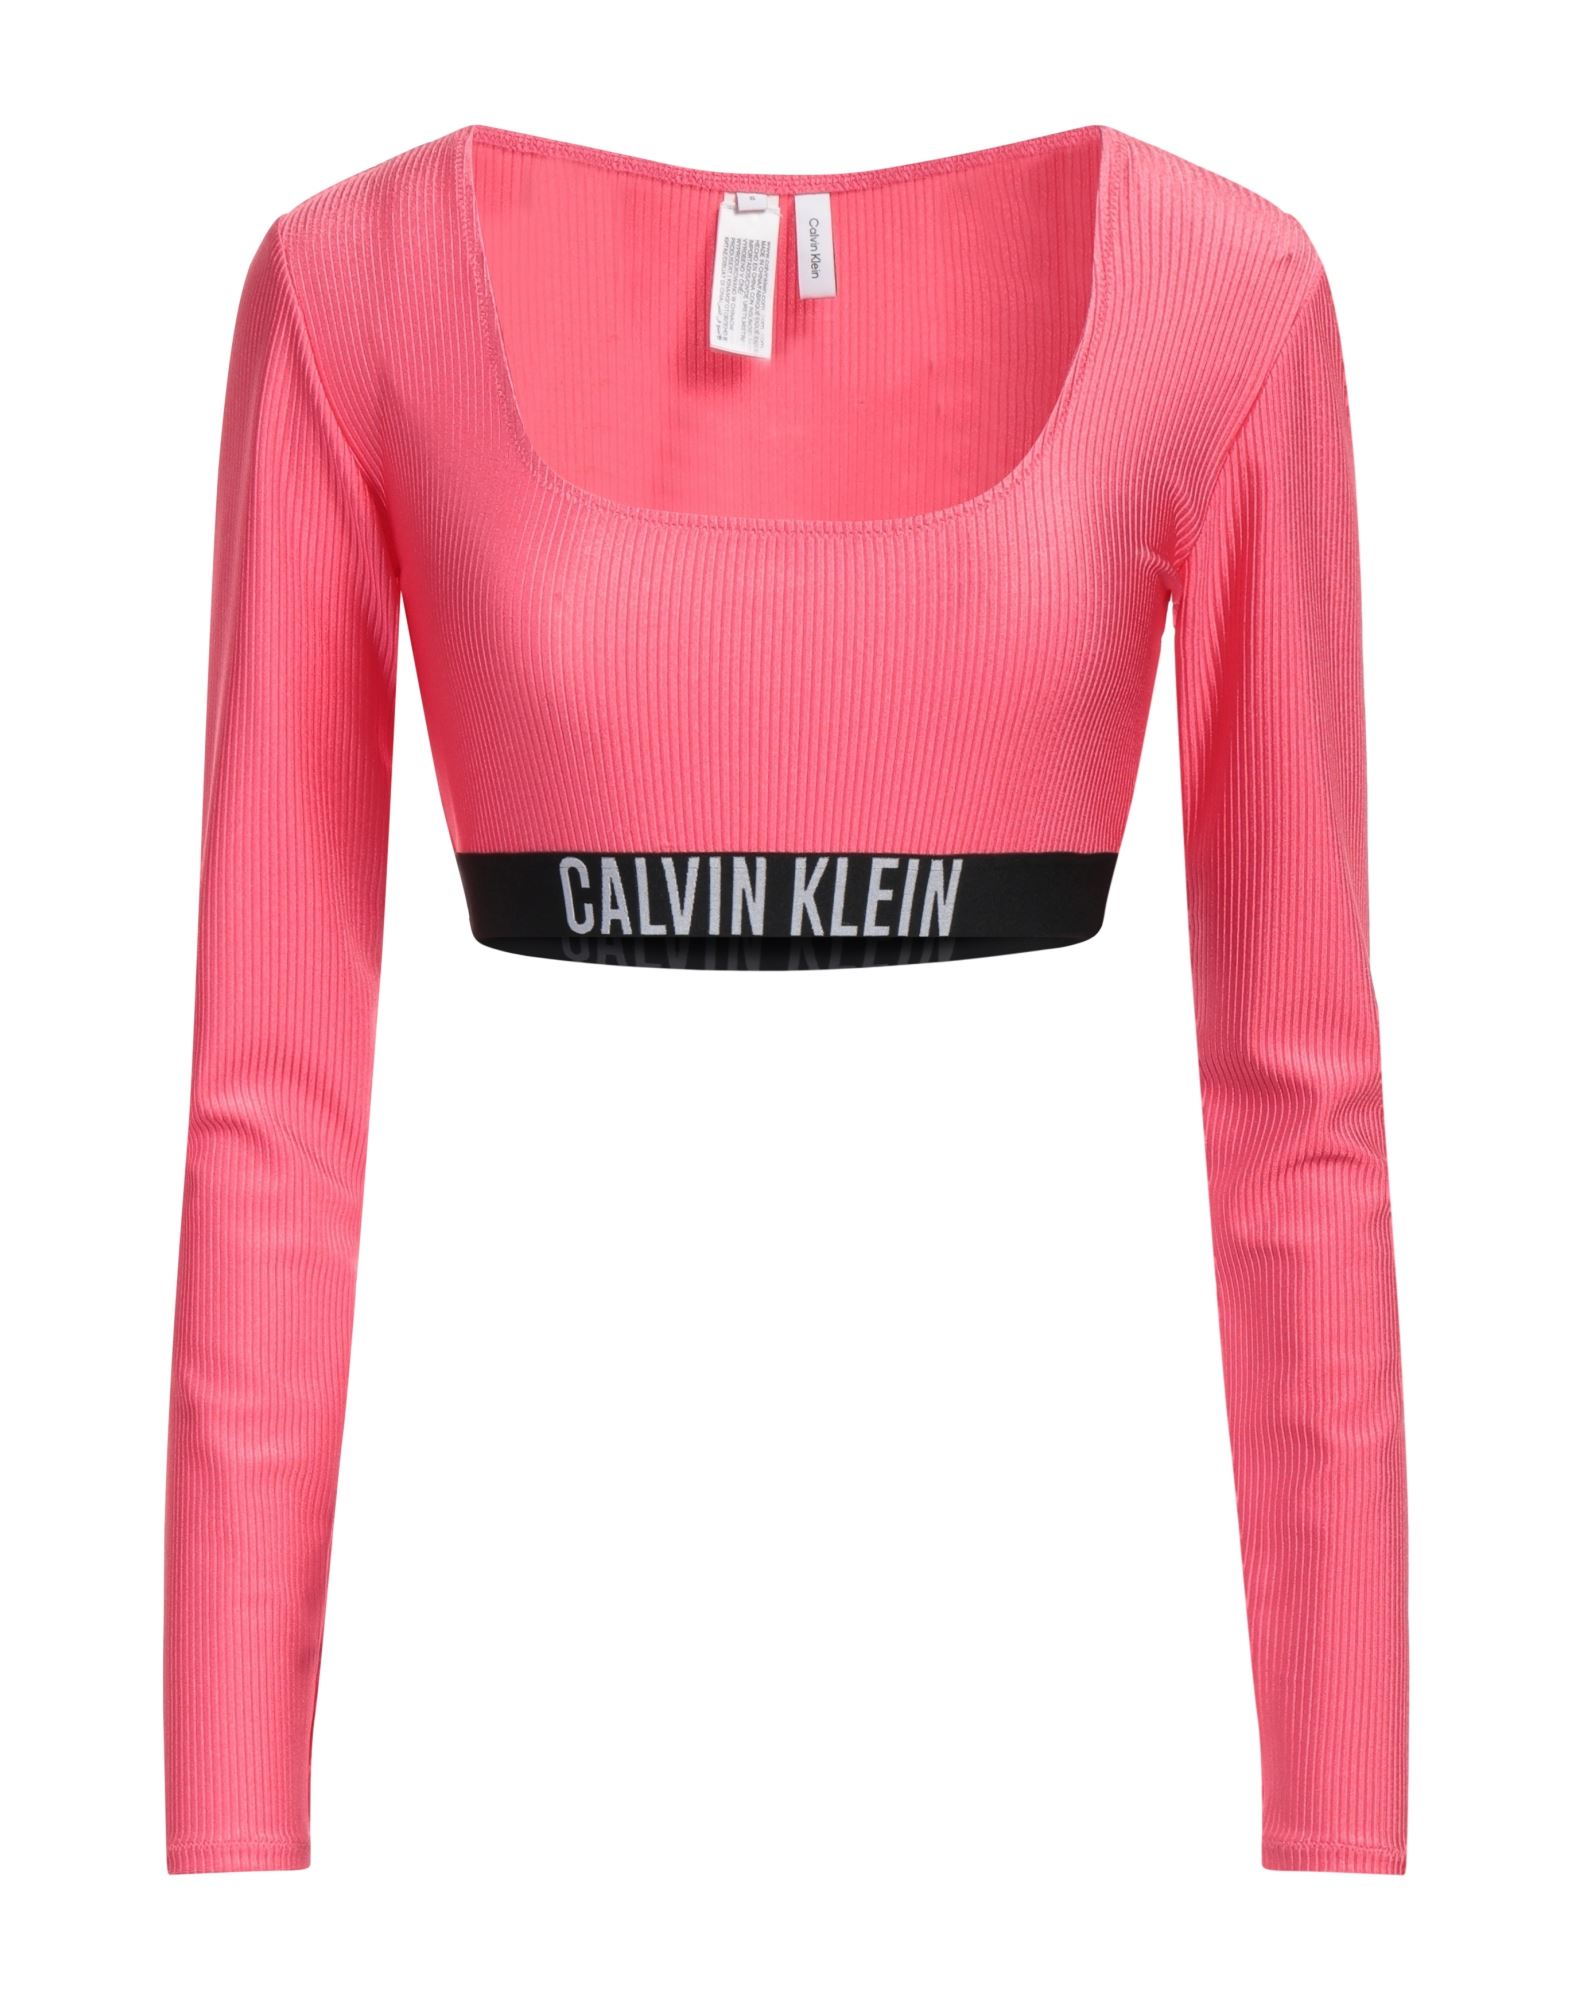 CALVIN KLEIN T-shirts Damen Fuchsia von CALVIN KLEIN